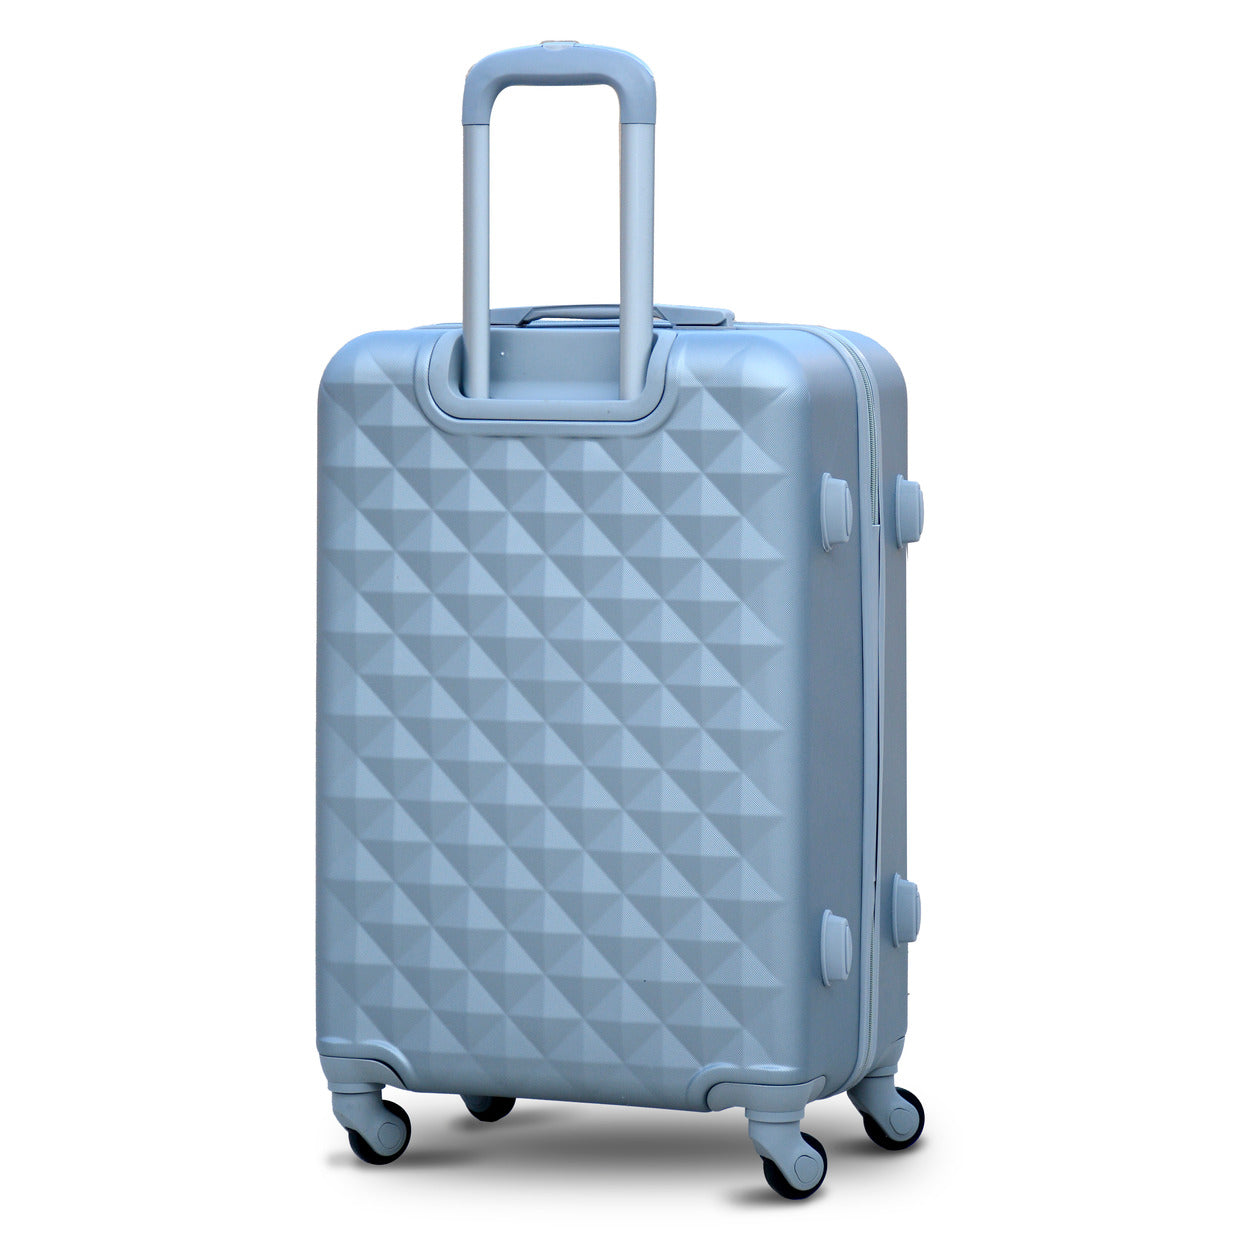 24" Grey ColourDiamond Cut ABS Luggage Lightweight Hard Case Trolley Bag Zaappy.com